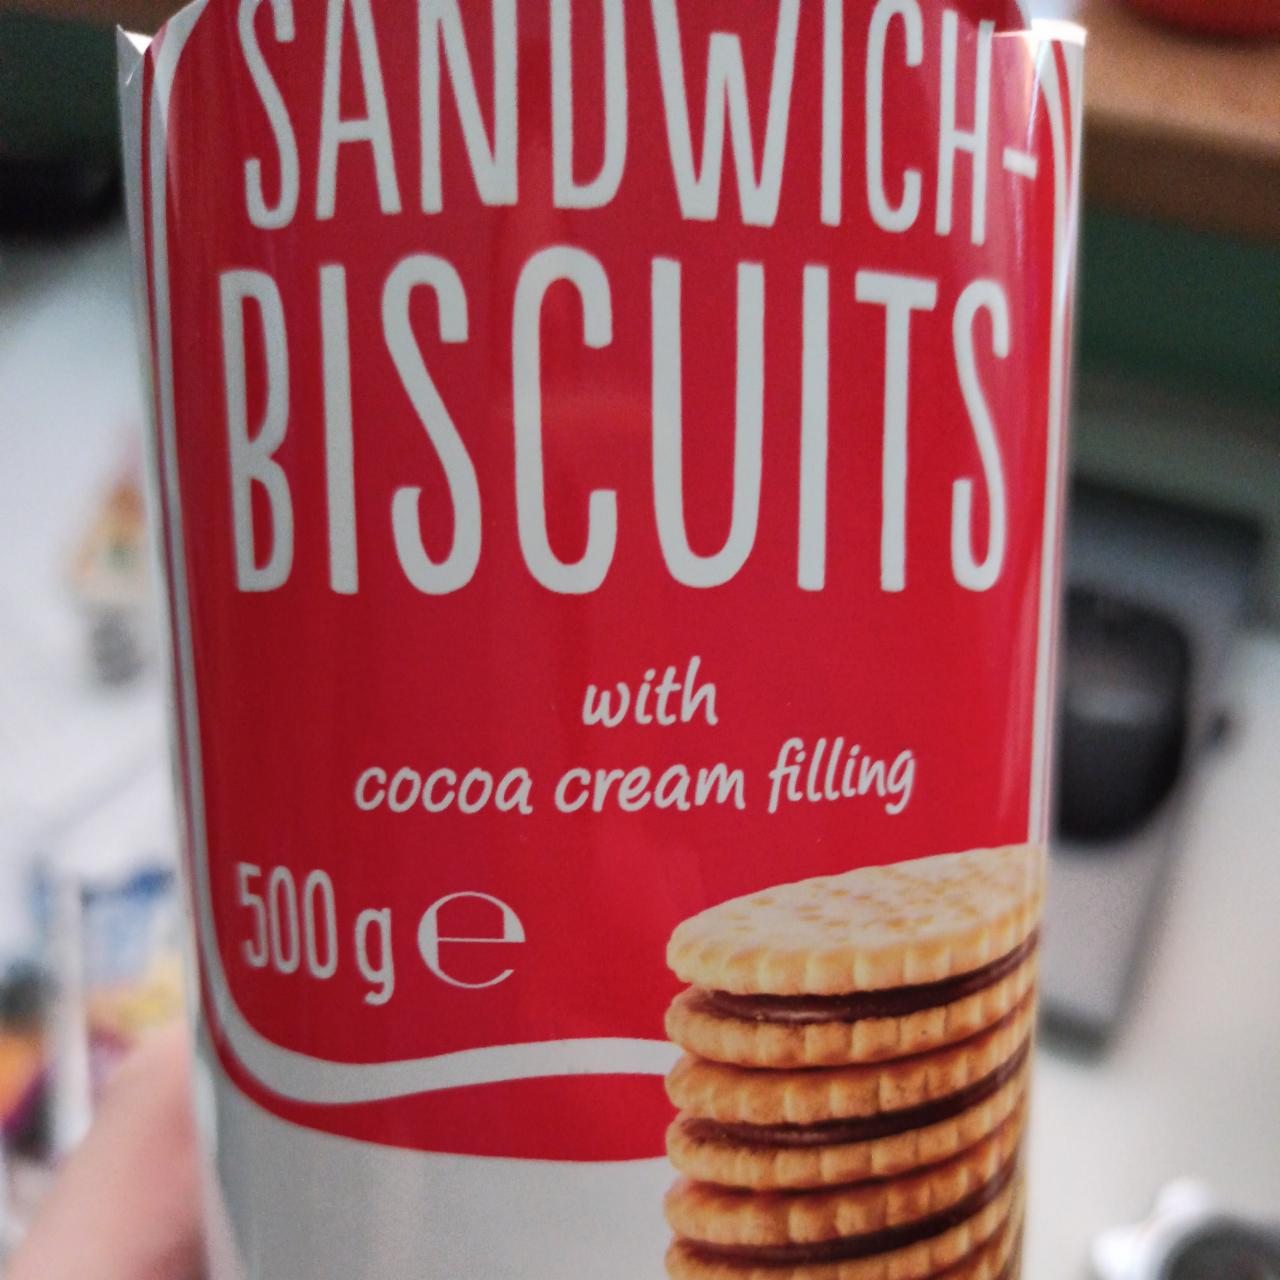 Fotografie - Sandwich-biscuits Billa